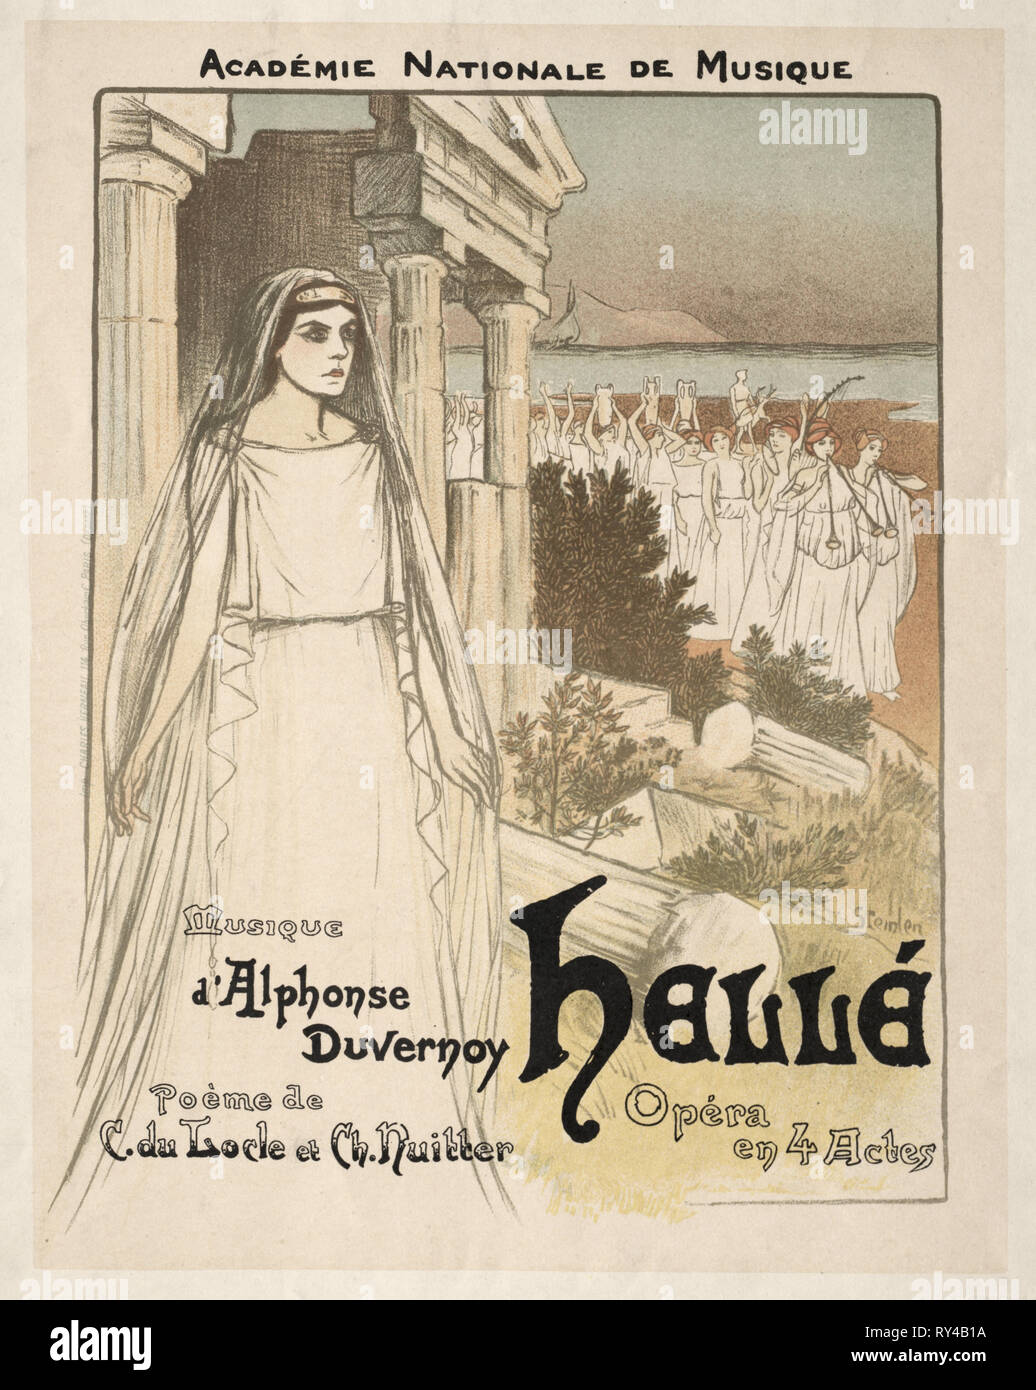 Hellé - Opéra en 4 actes, 1896. Théophile Alexandre Steinlen (Swiss, 1859-1923). Lithograph Stock Photo